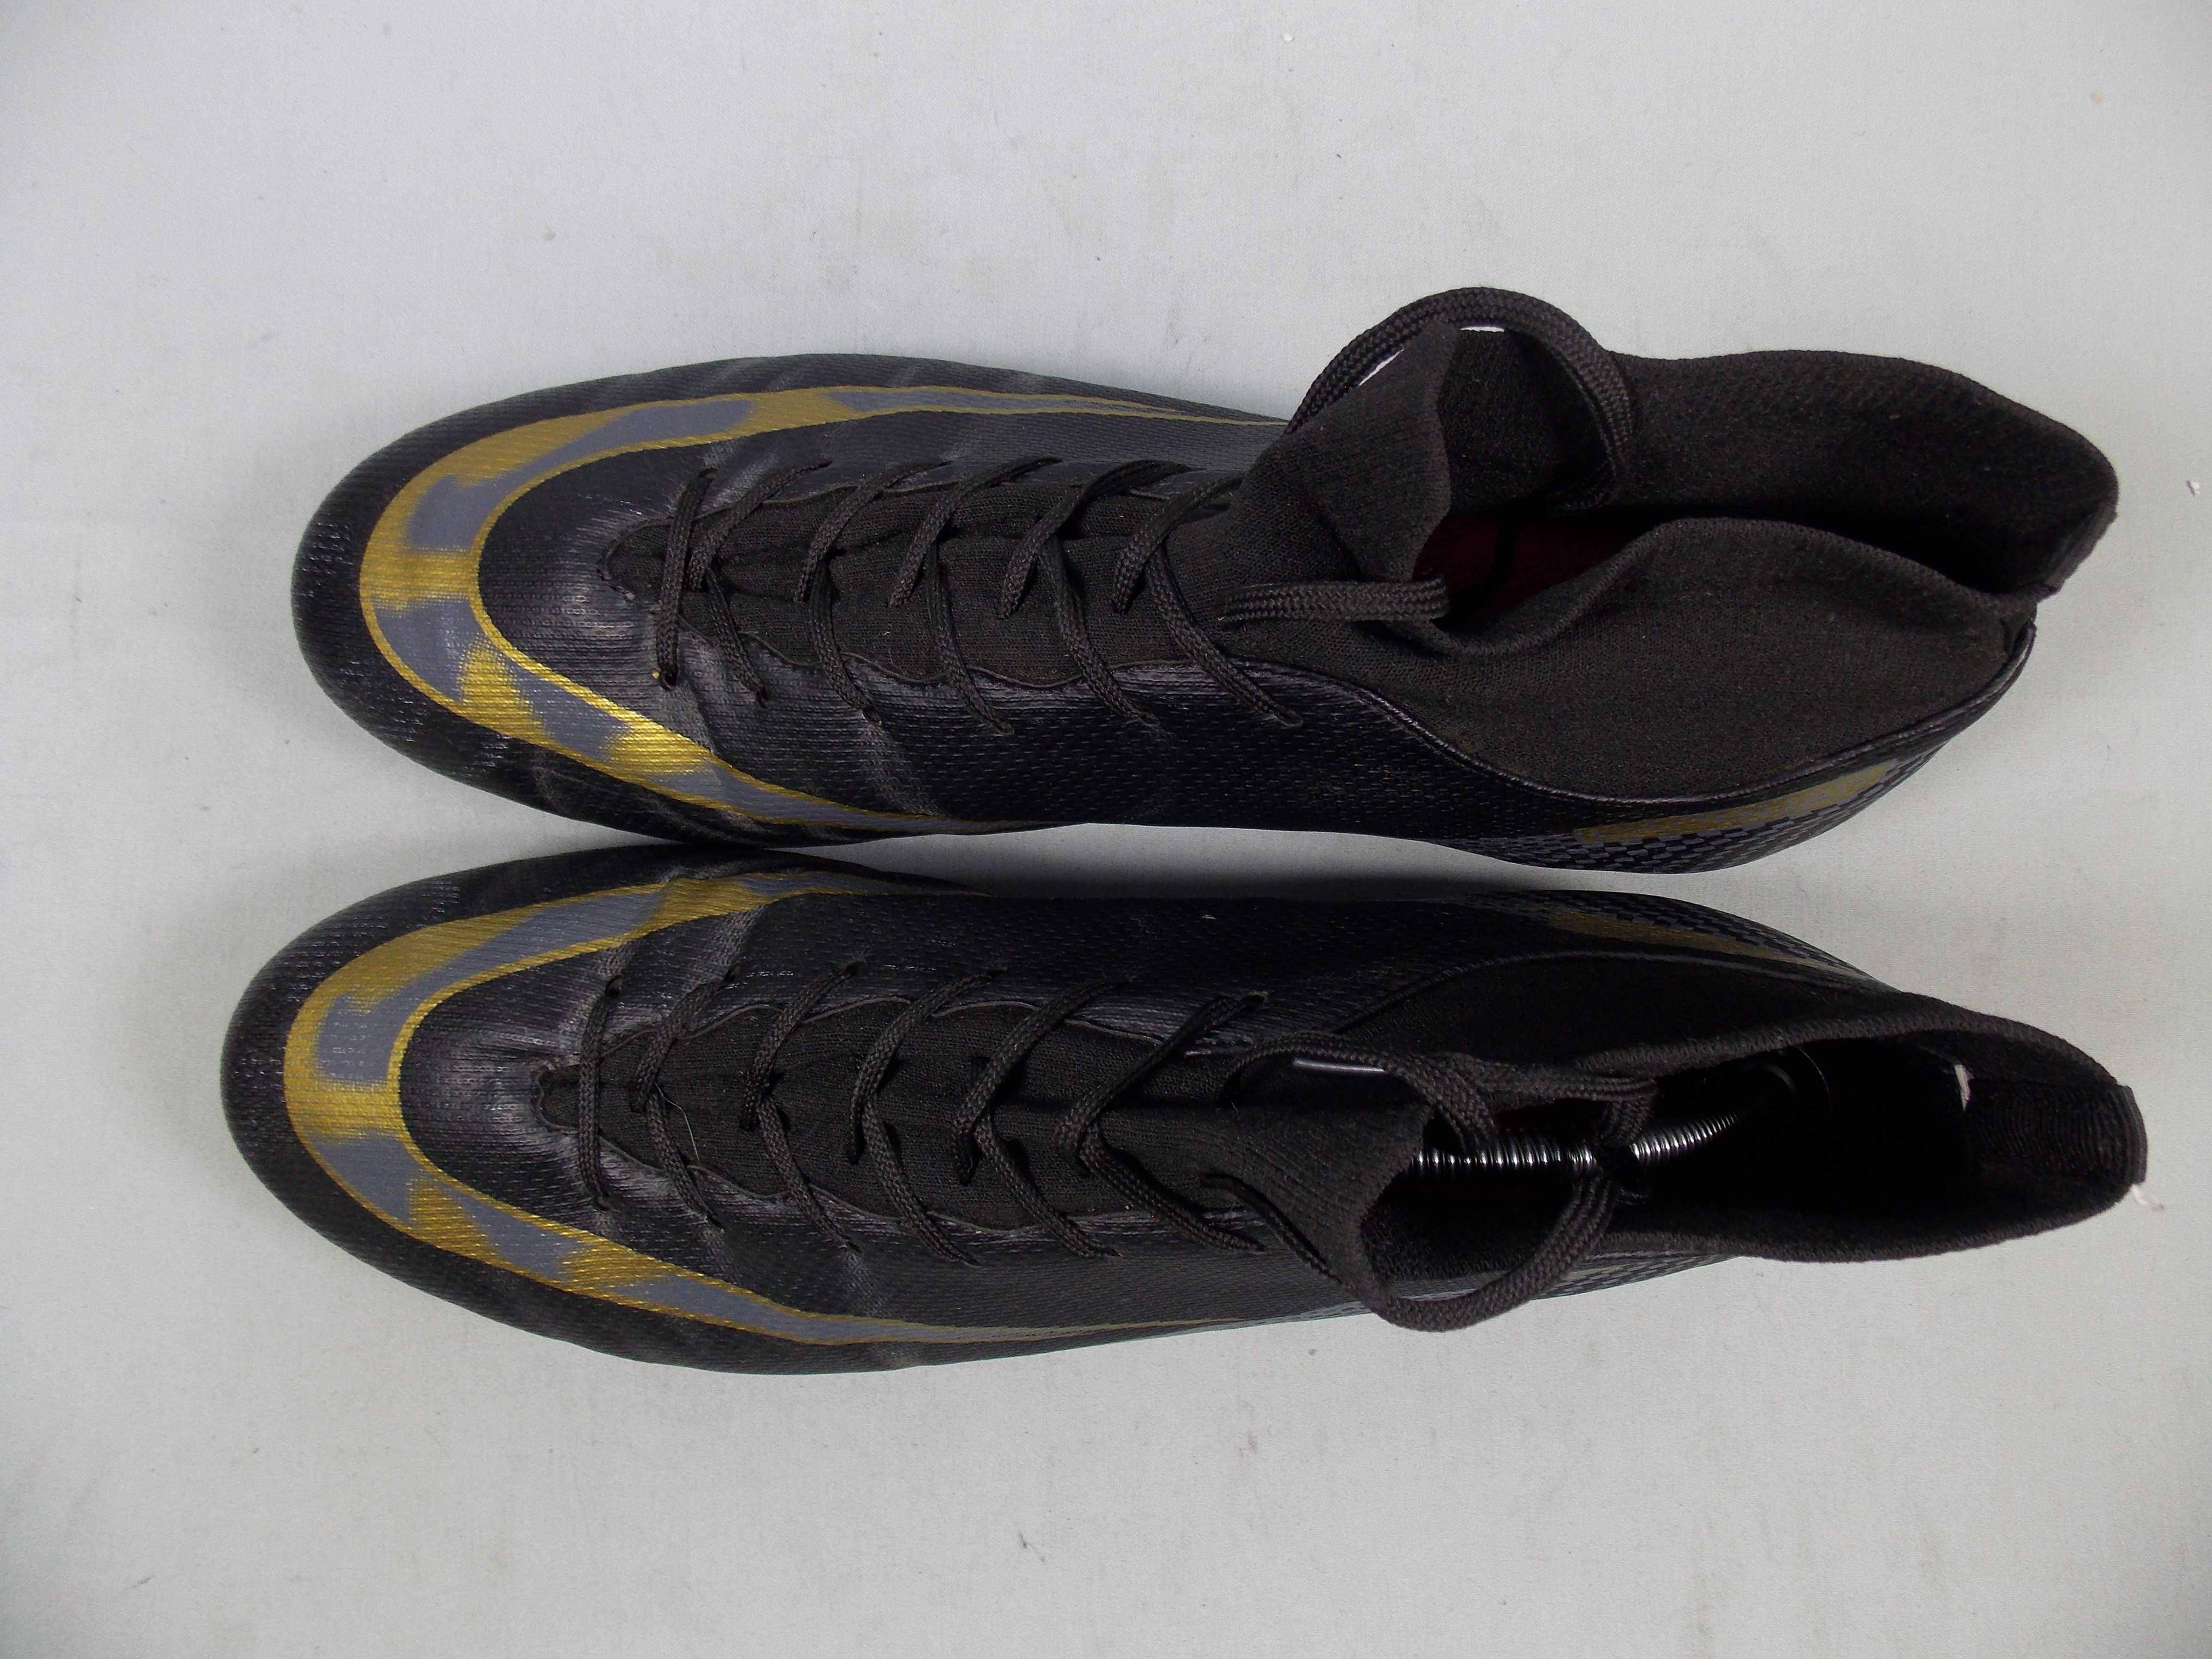 DAOQUAN Pro 360 Mens Football Cleat Shoes